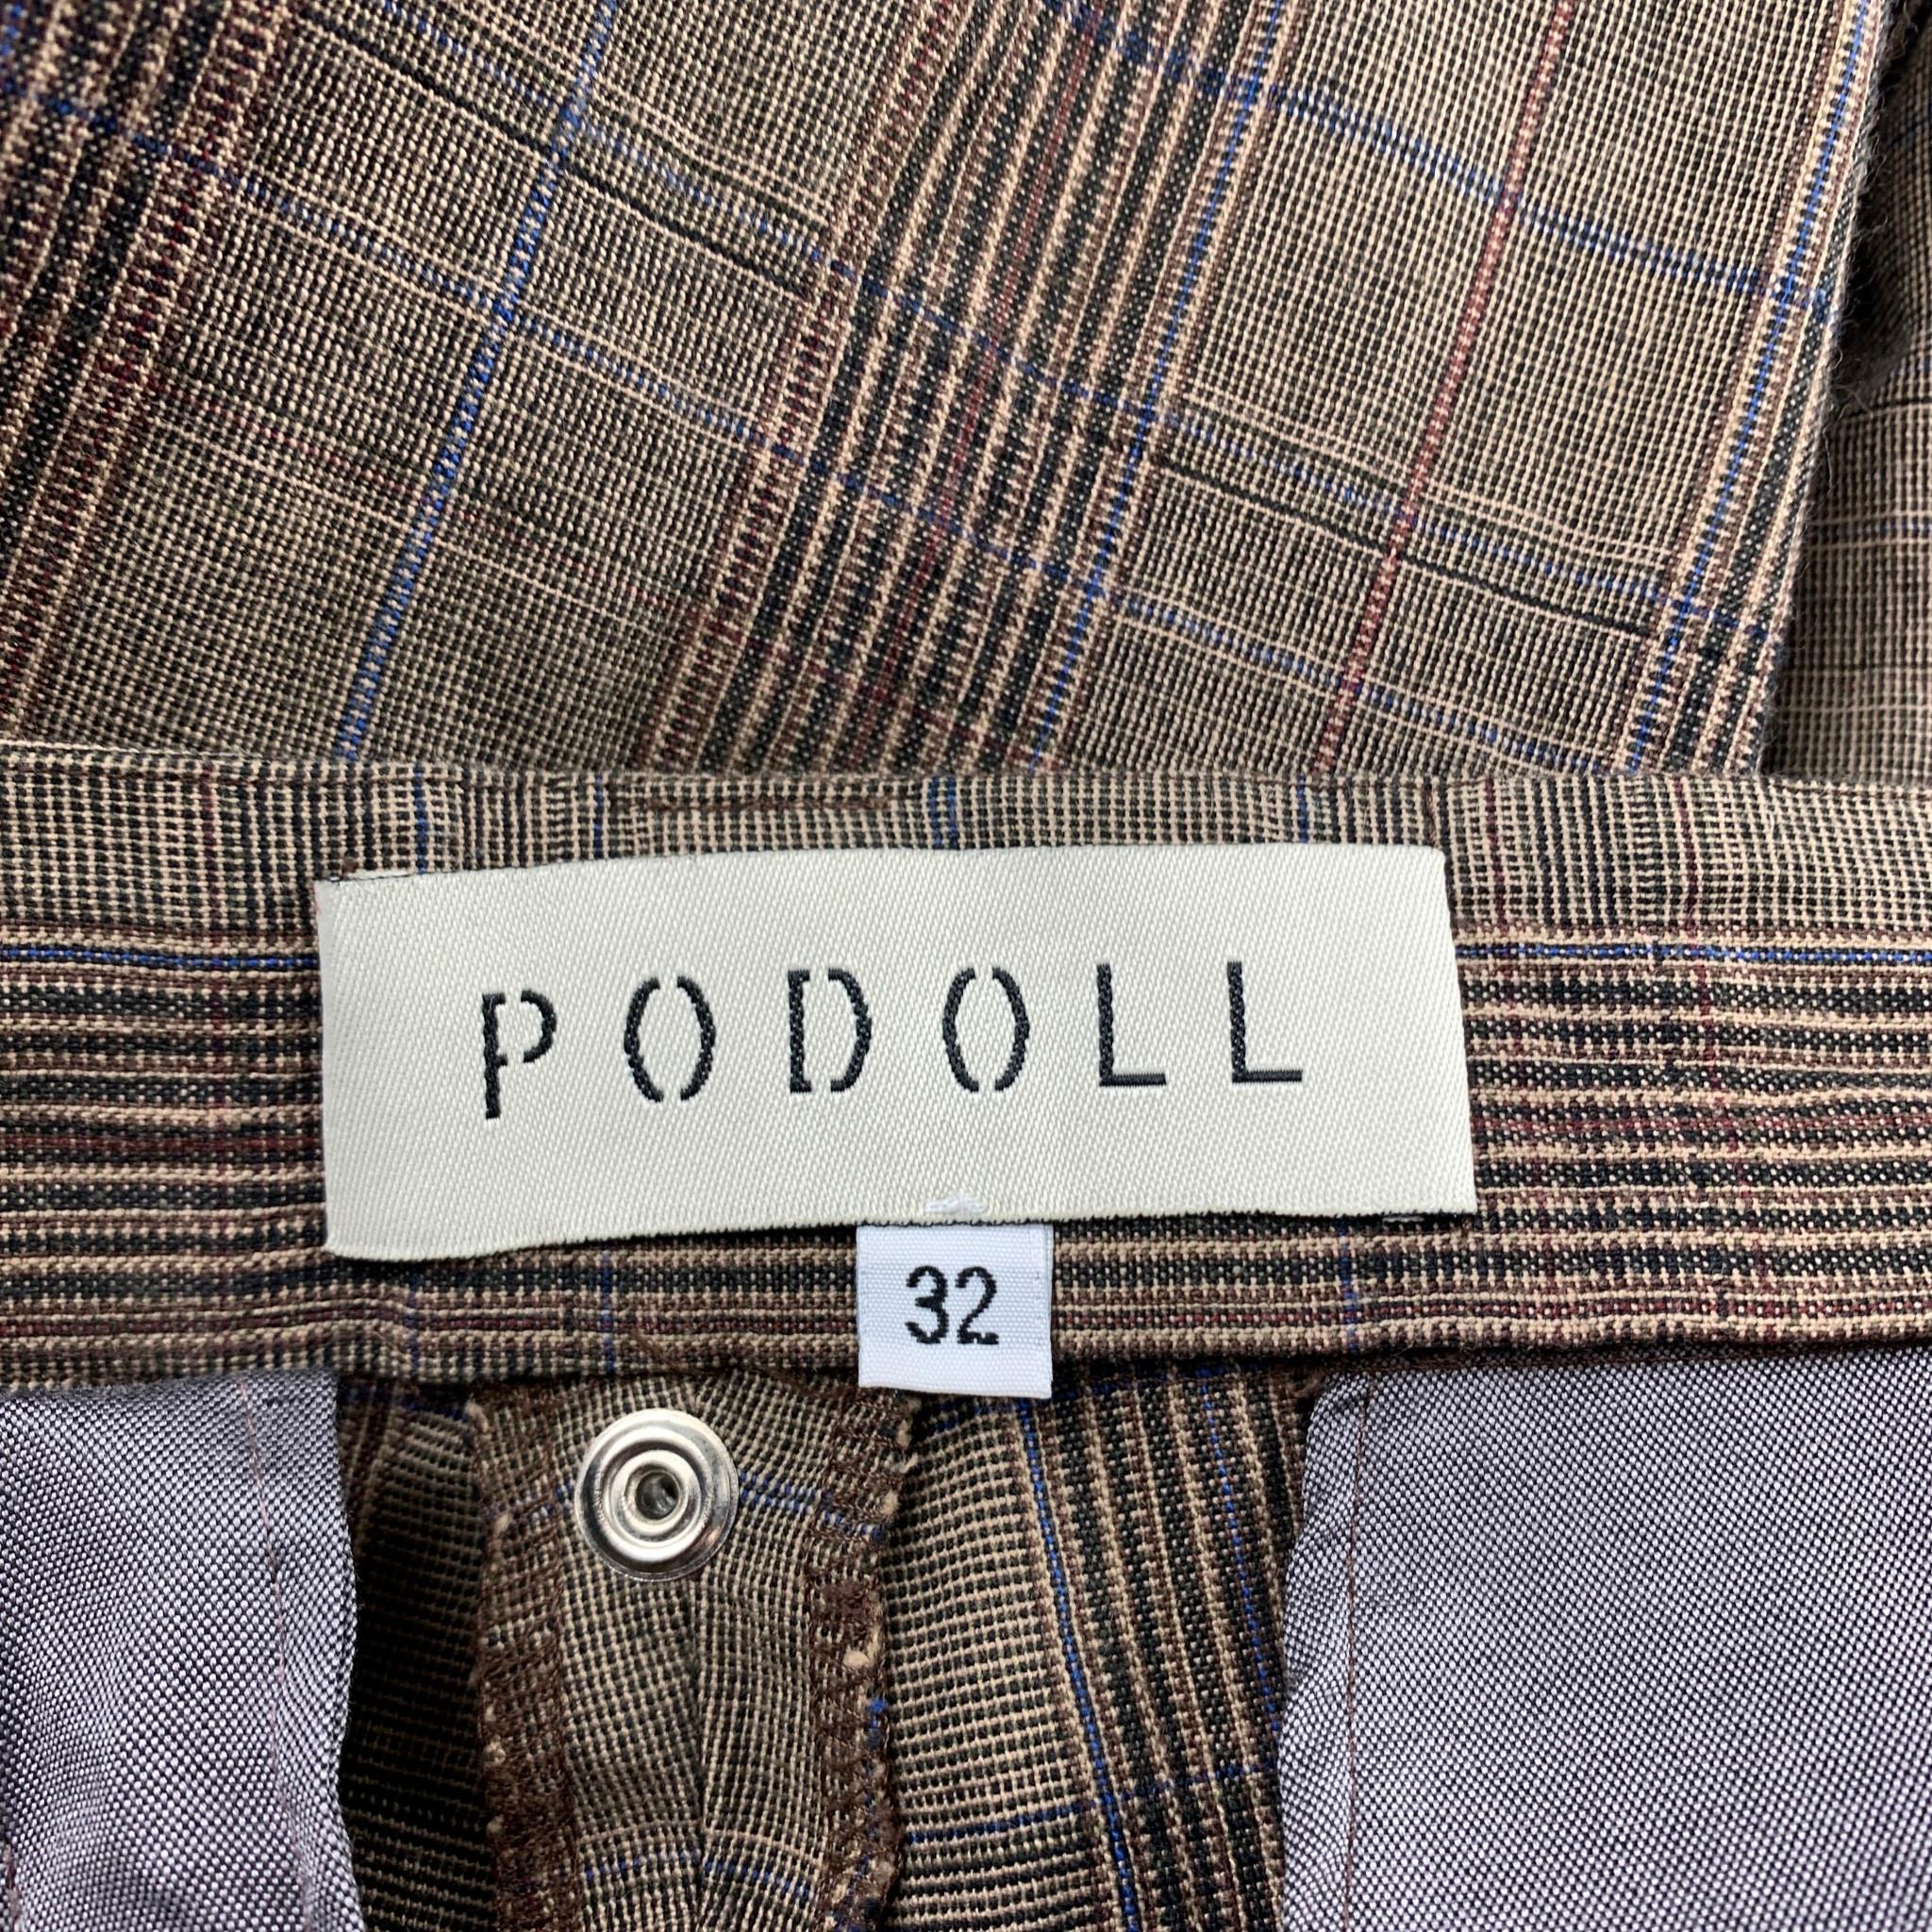 PODOLL Size M Brown Plaid Cotton Blend Peak Lapel Suit 2